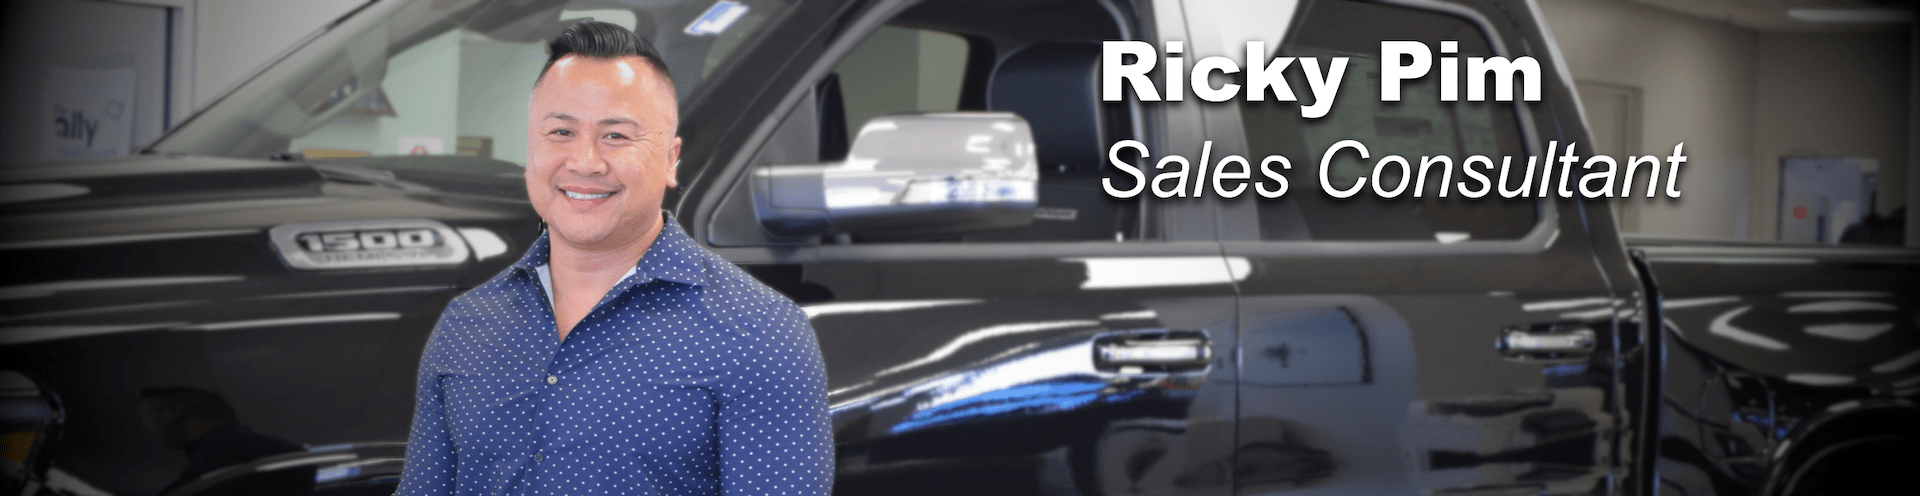 ricky pim sales consultant prestige chrysler dodge jeep ram